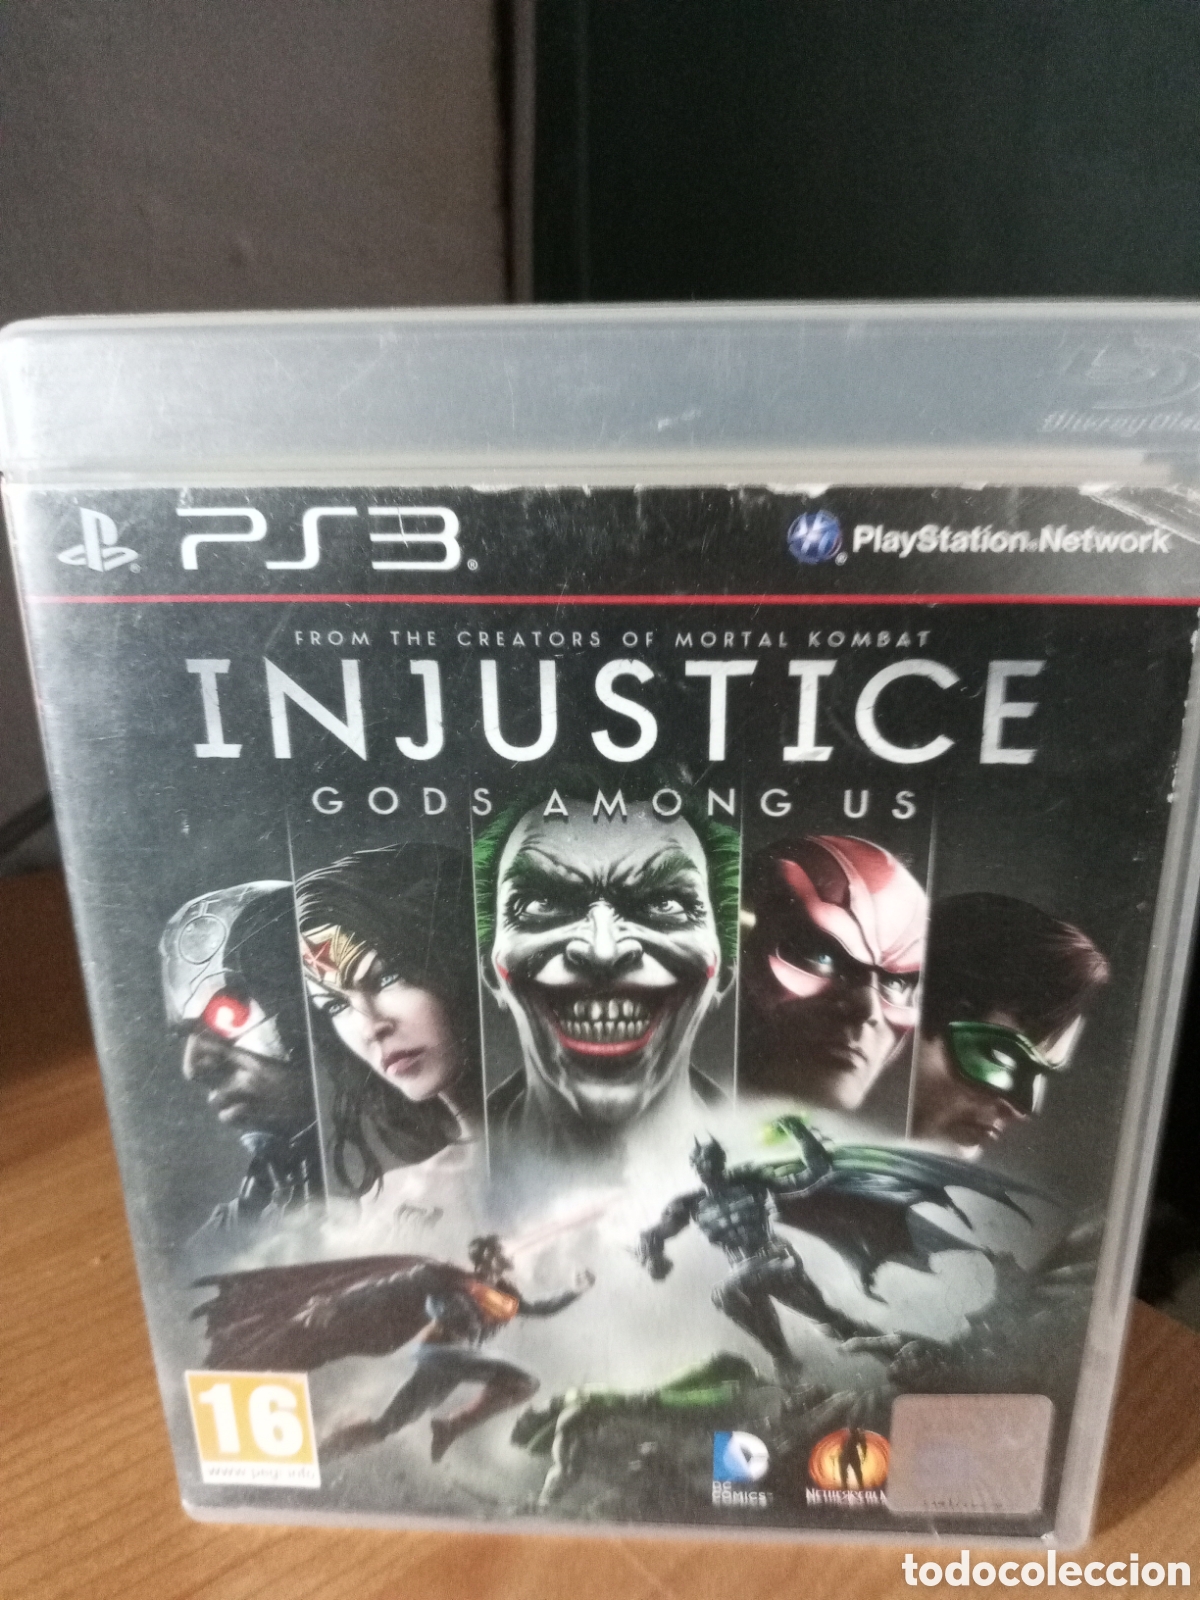 injustice gods among us, juego ps3 - Acquista Videogiochi e console PS3 su  todocoleccion